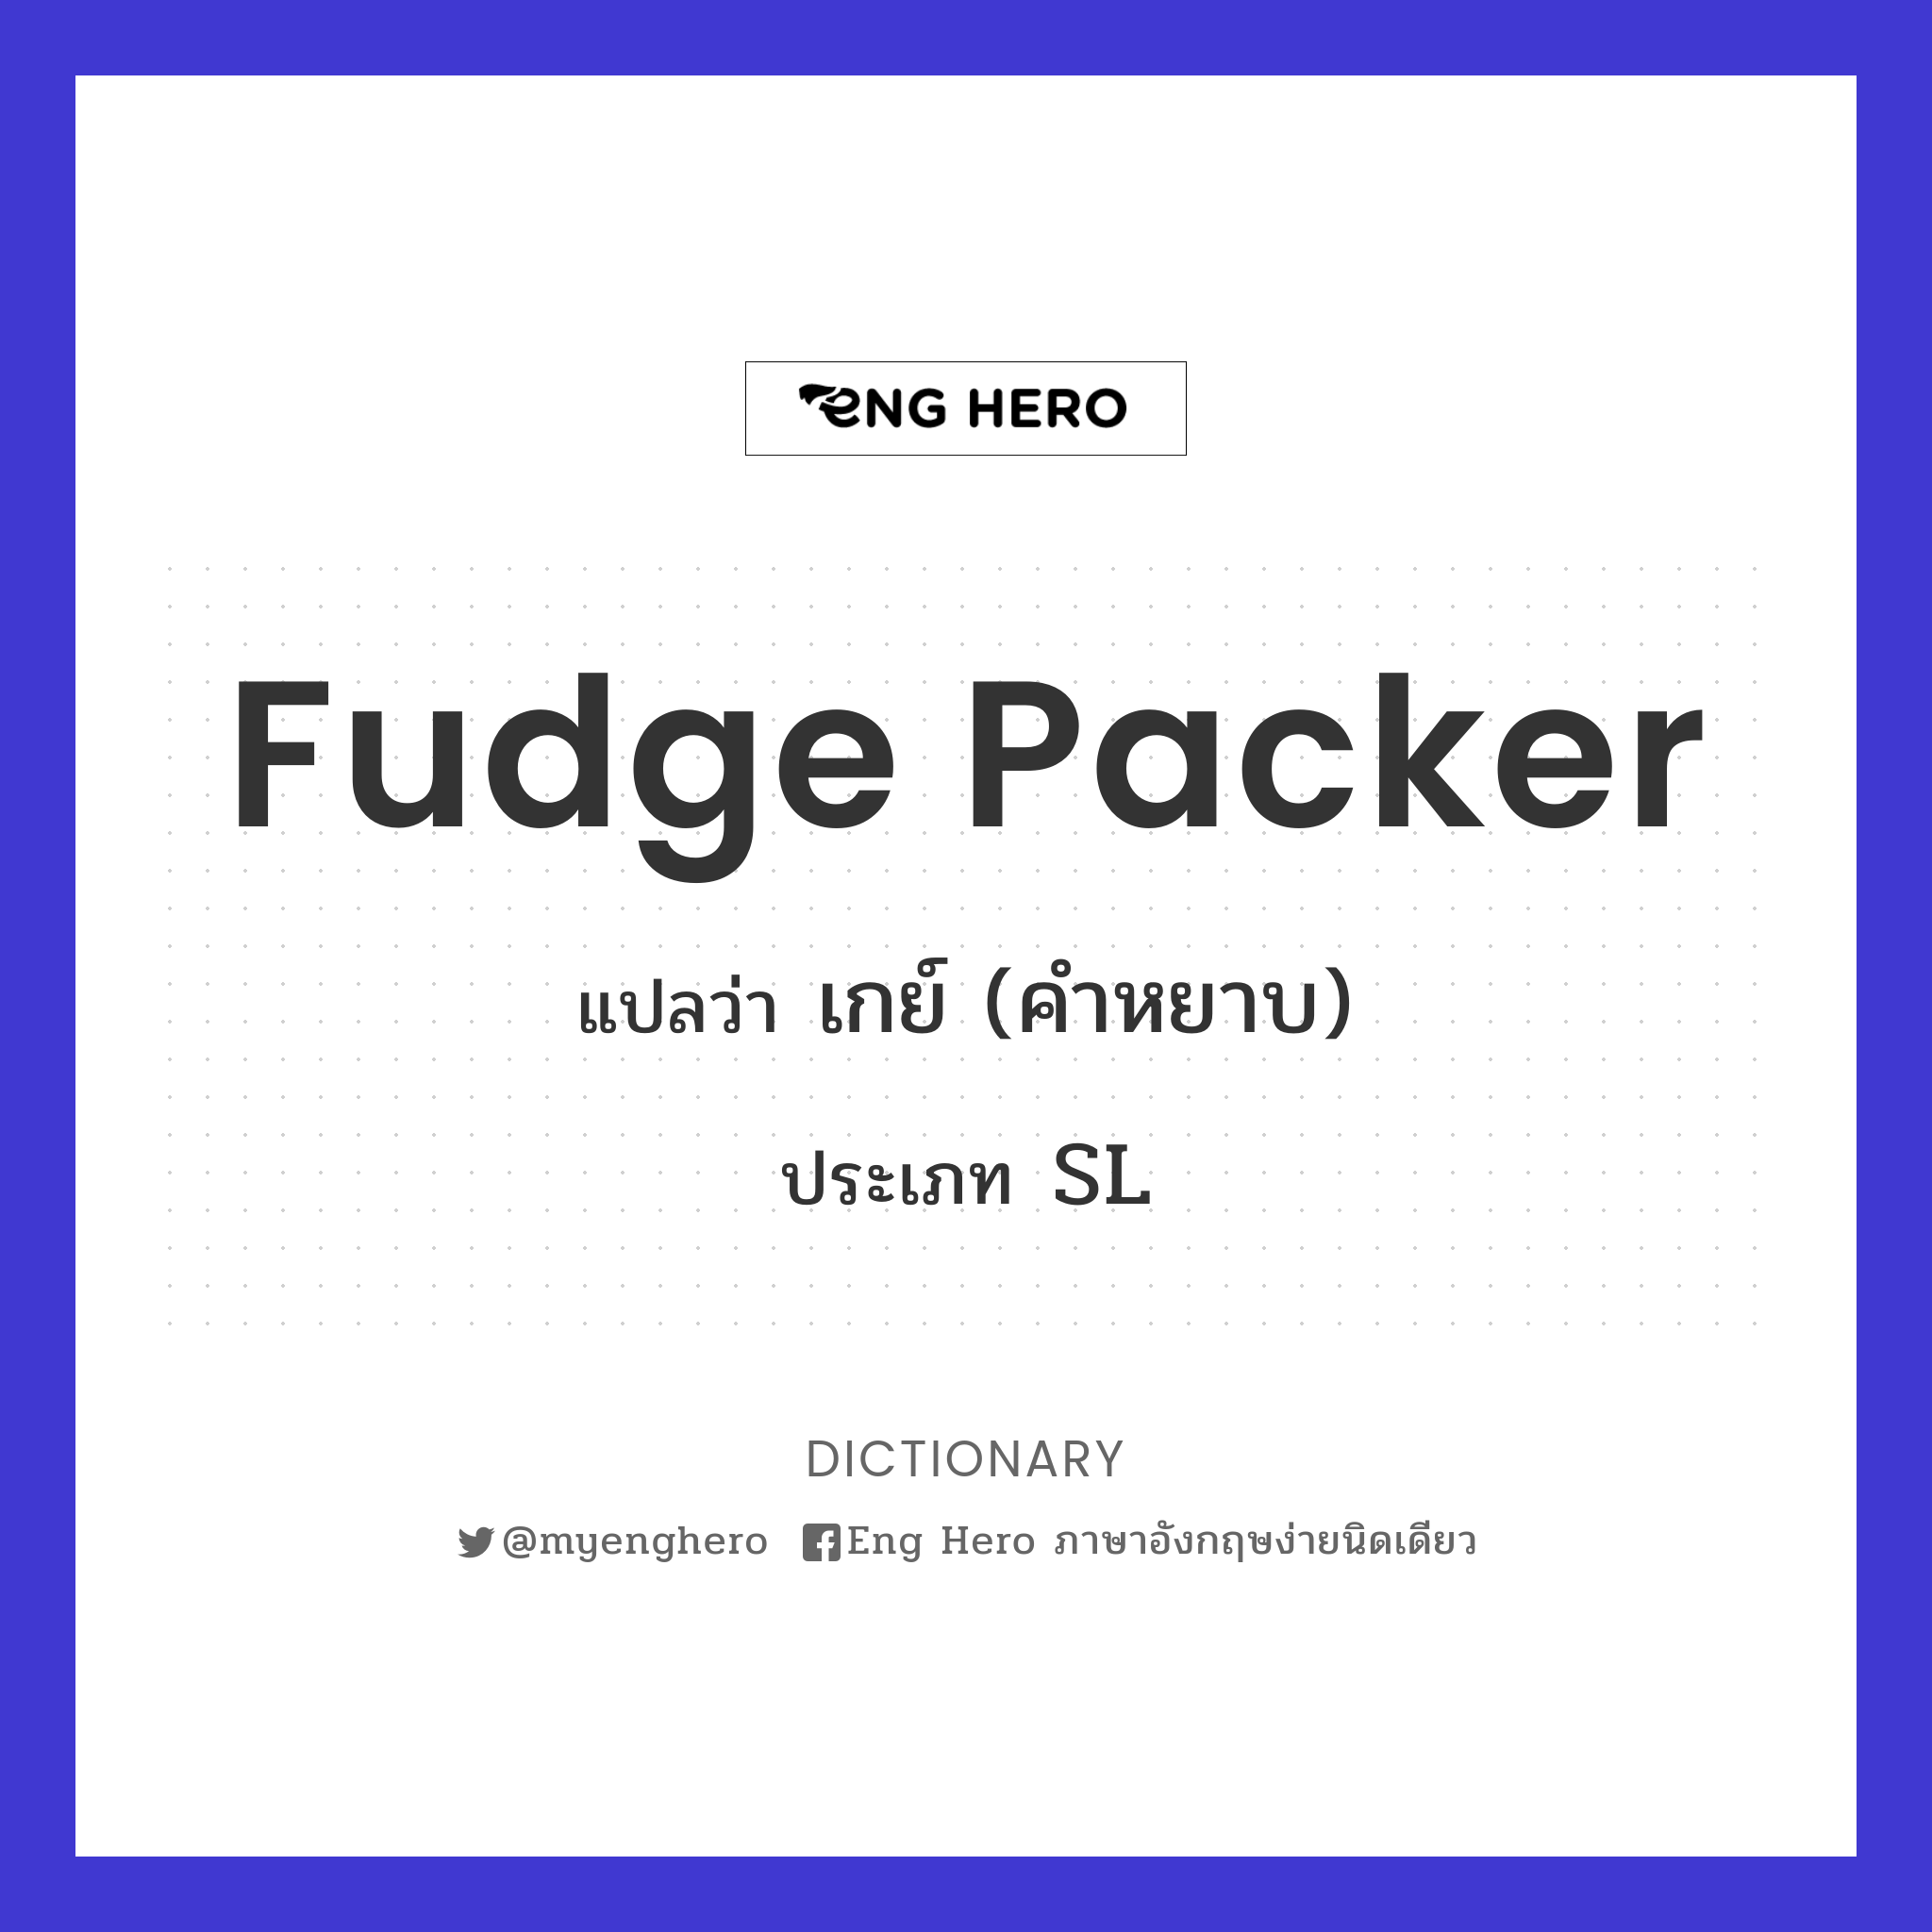 fudge packer